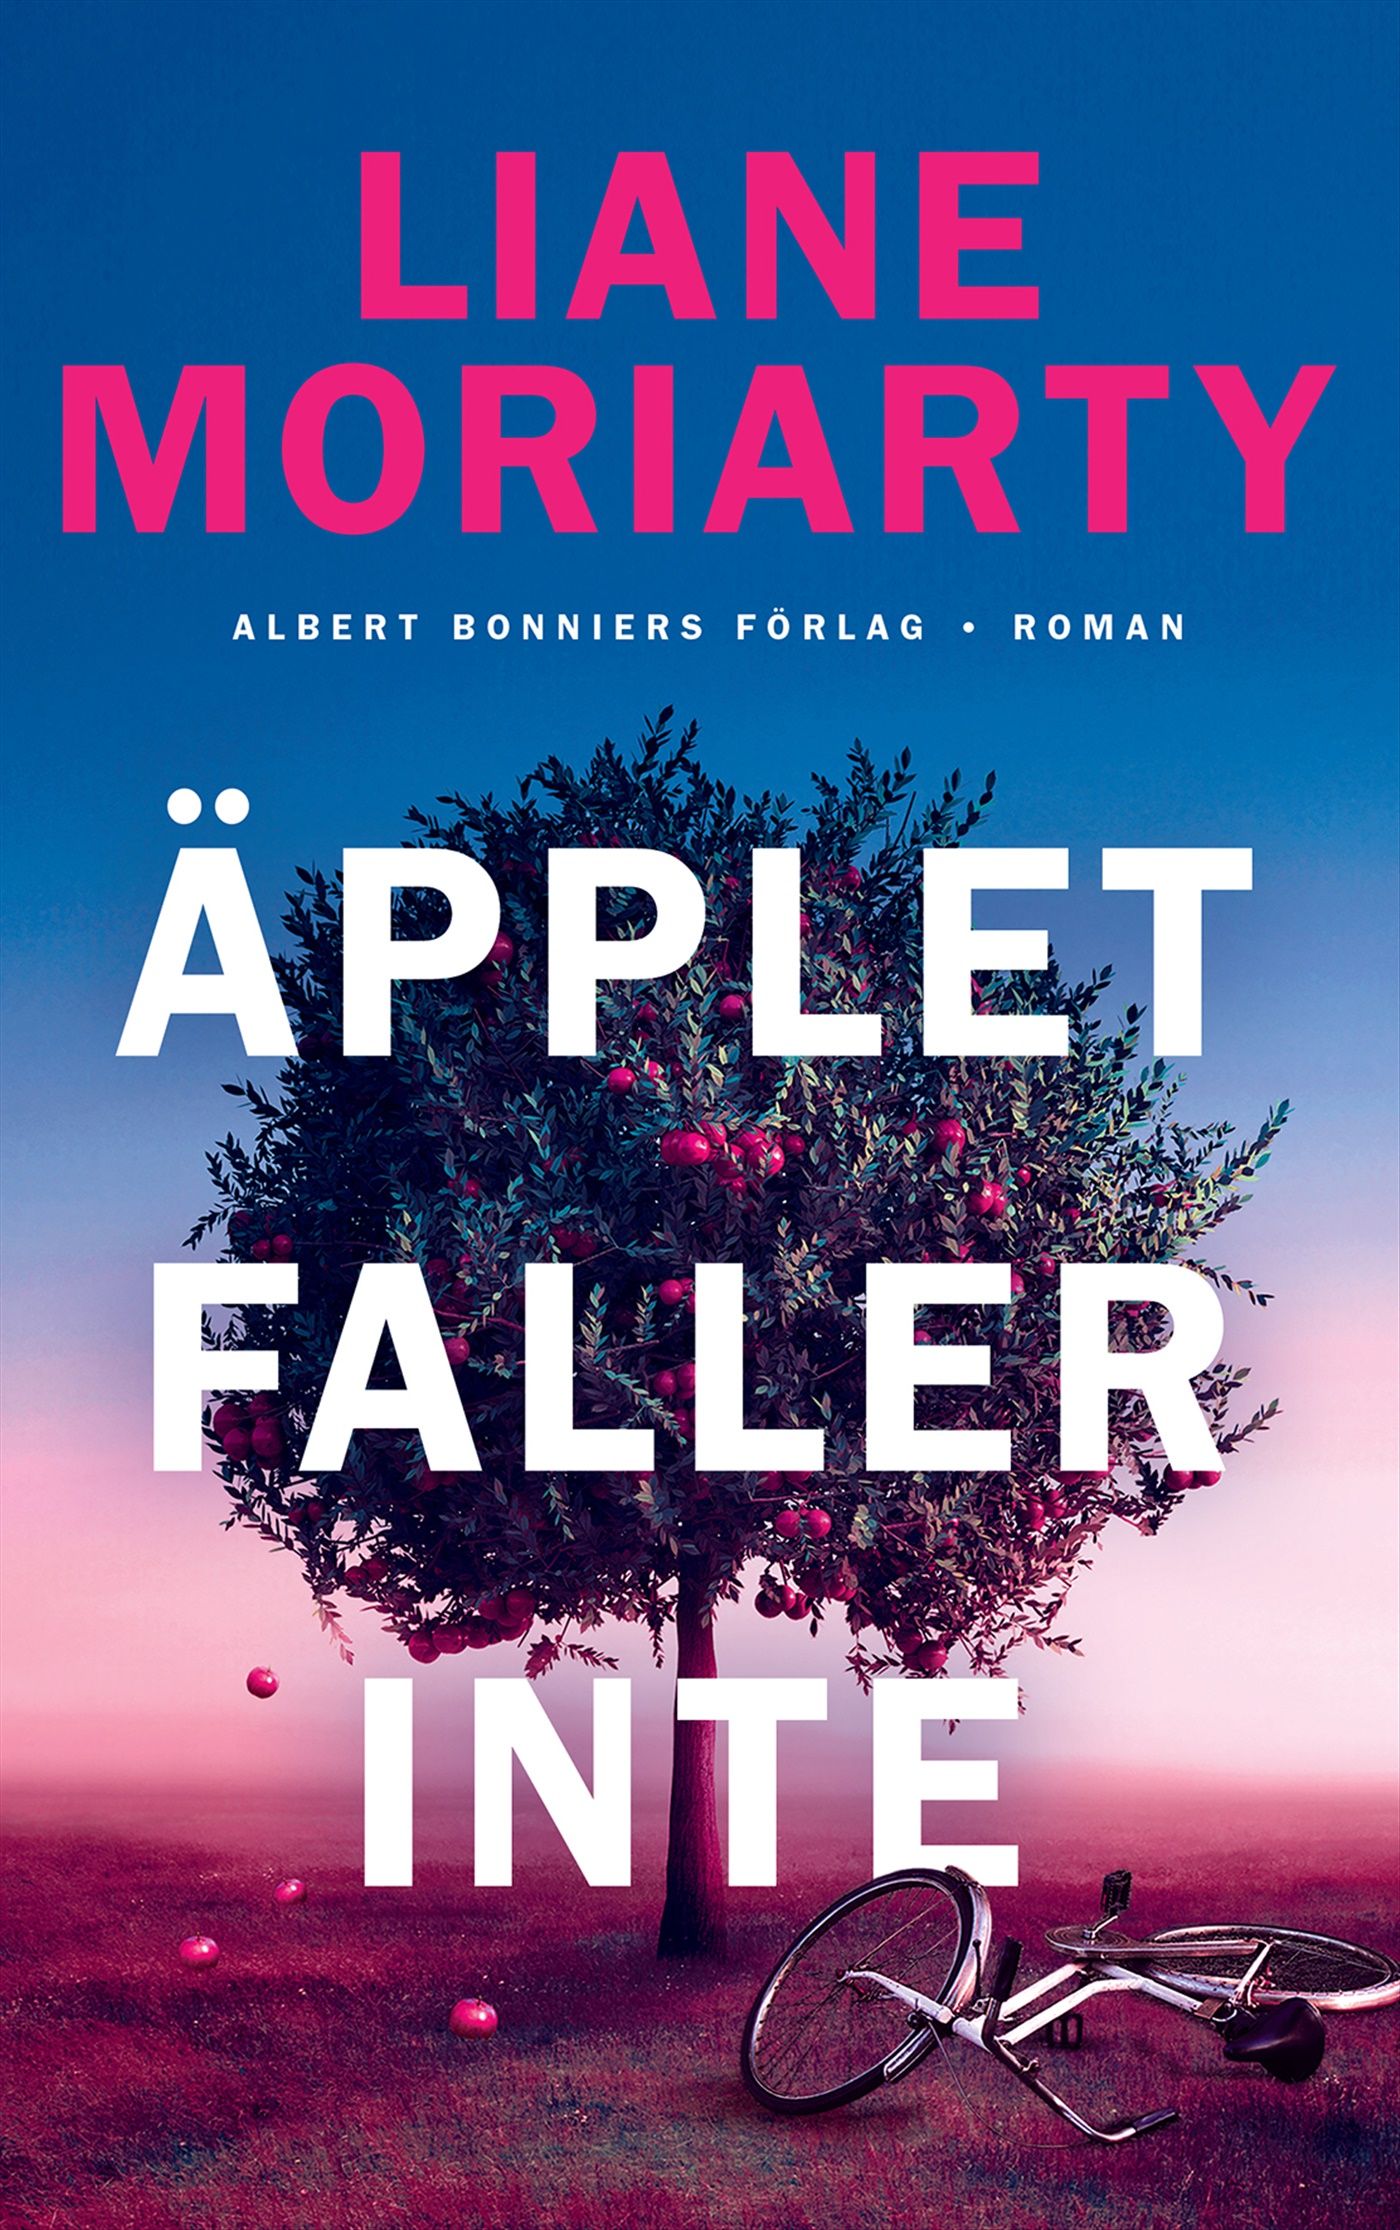 Äpplet faller inte, e-bog af Liane Moriarty